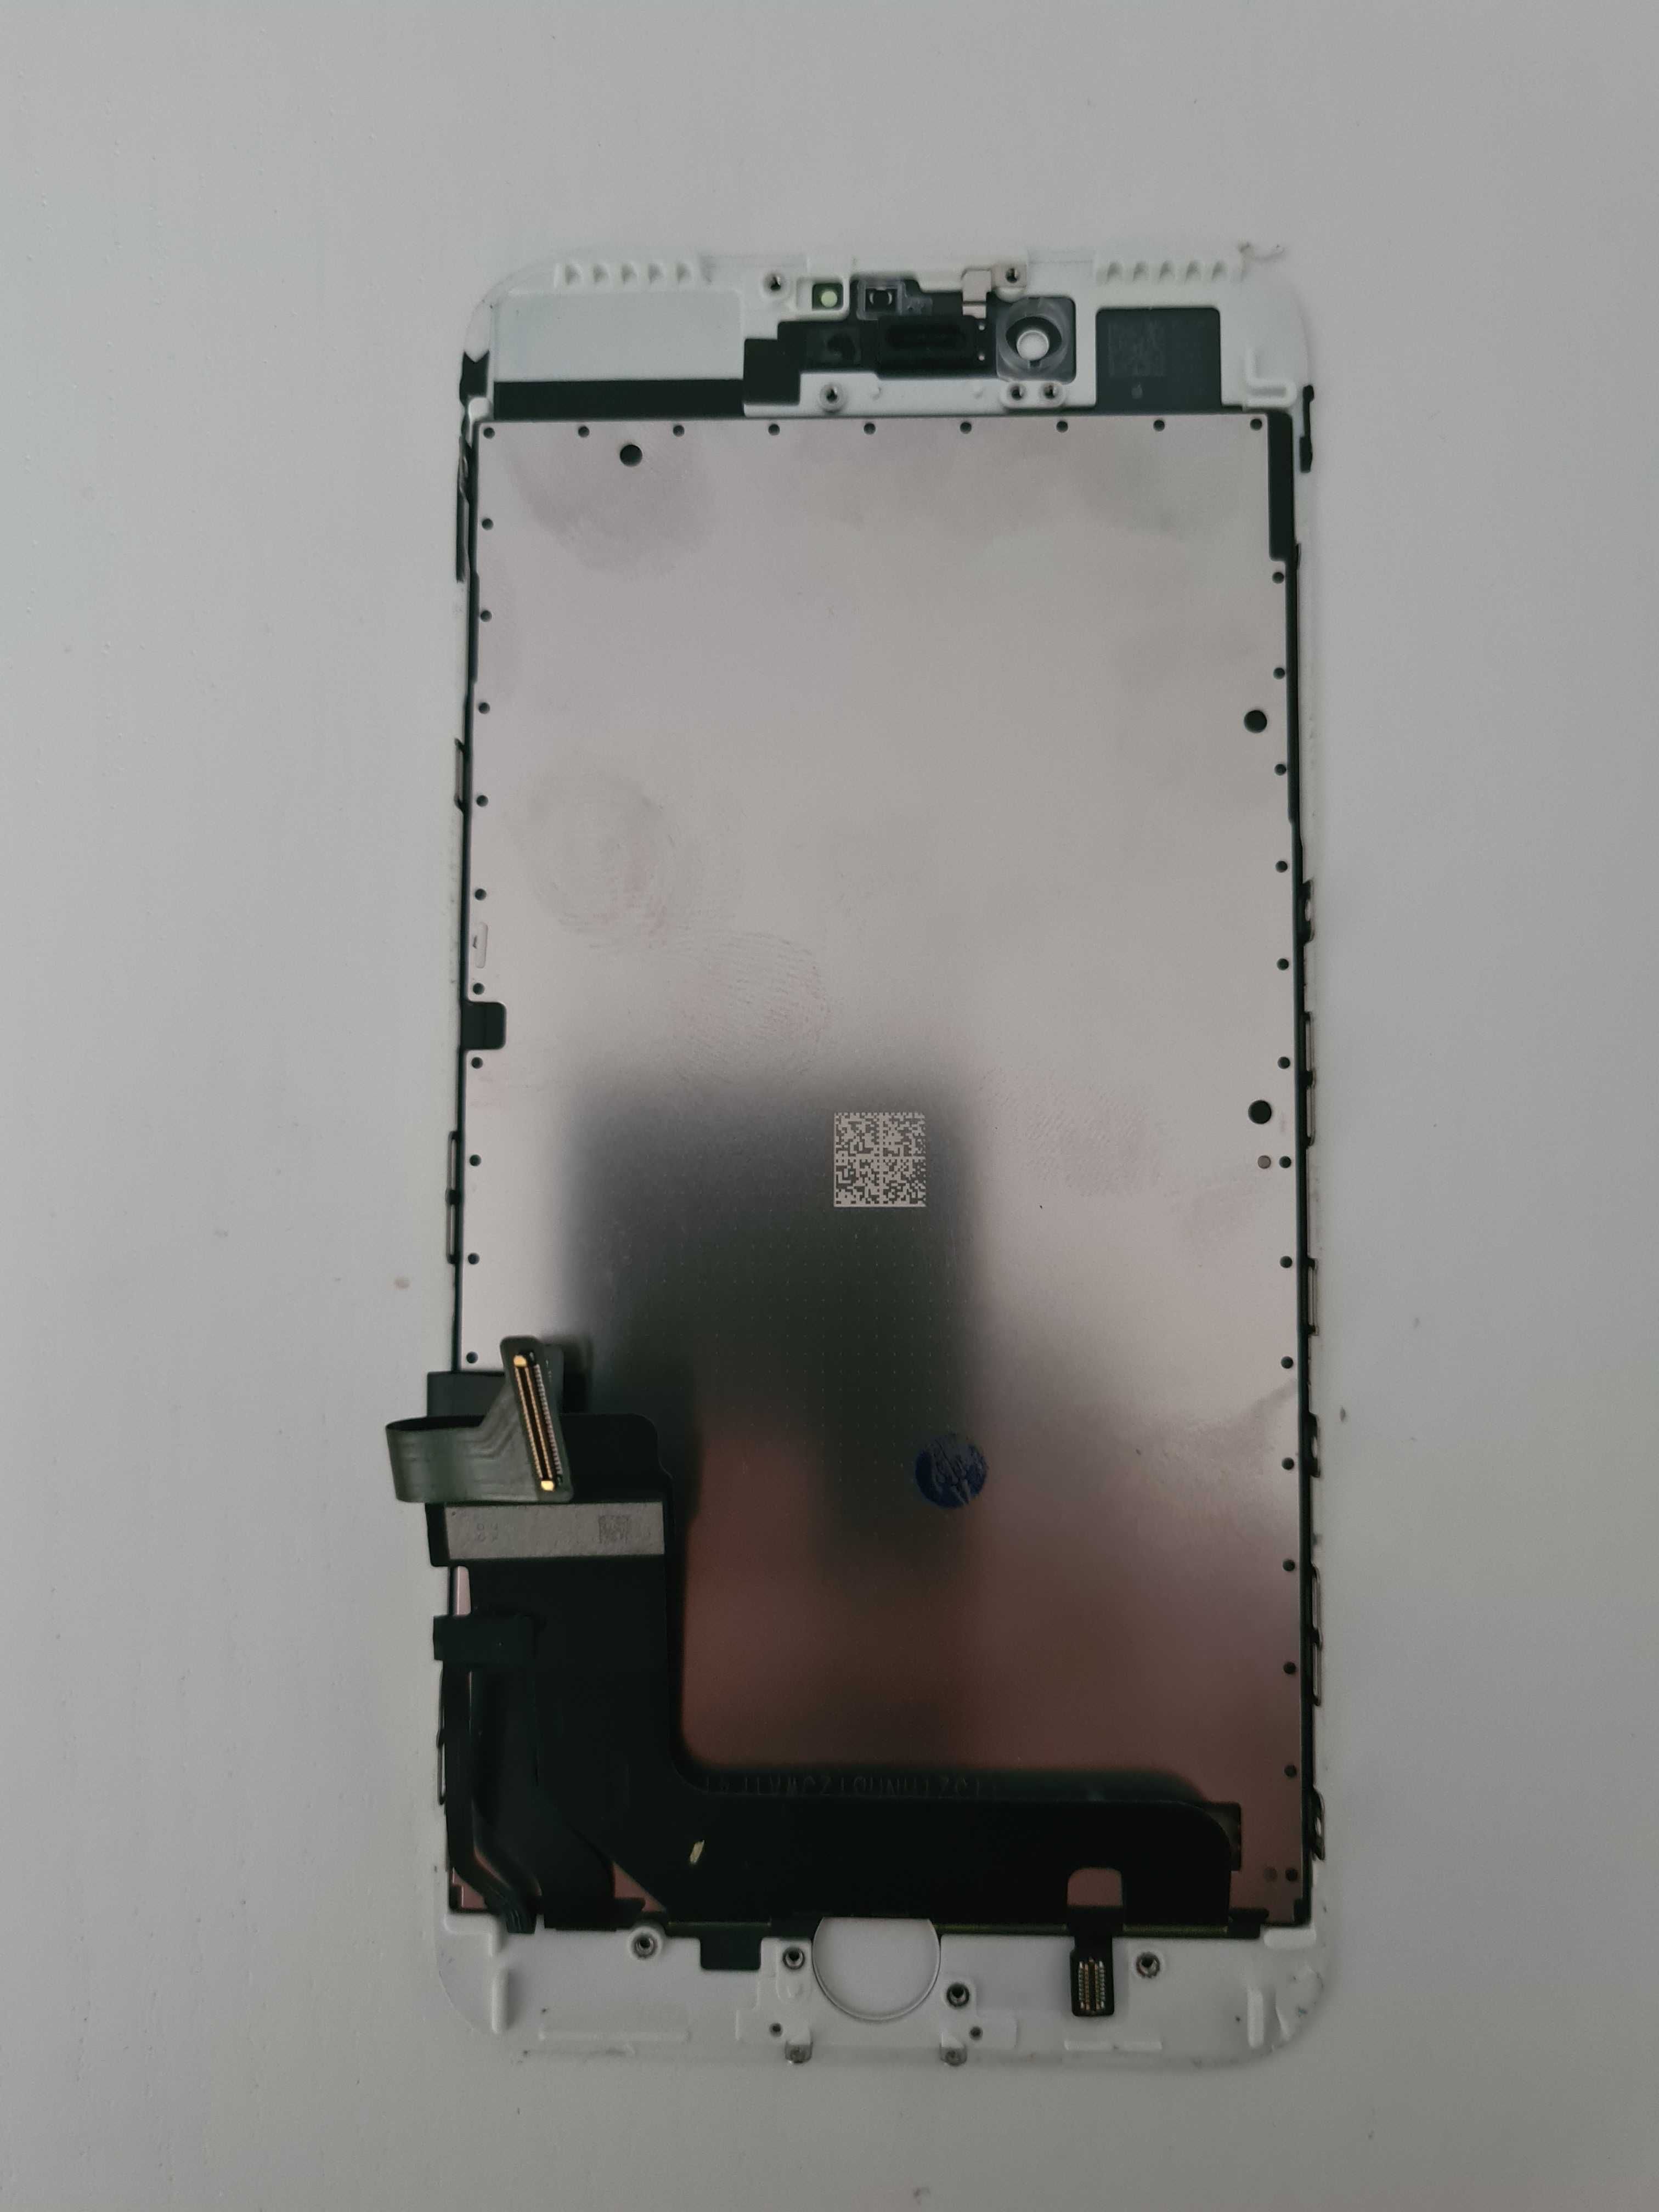 Oryginalny wyświetlacz Iphone 7 plus demontaż biały